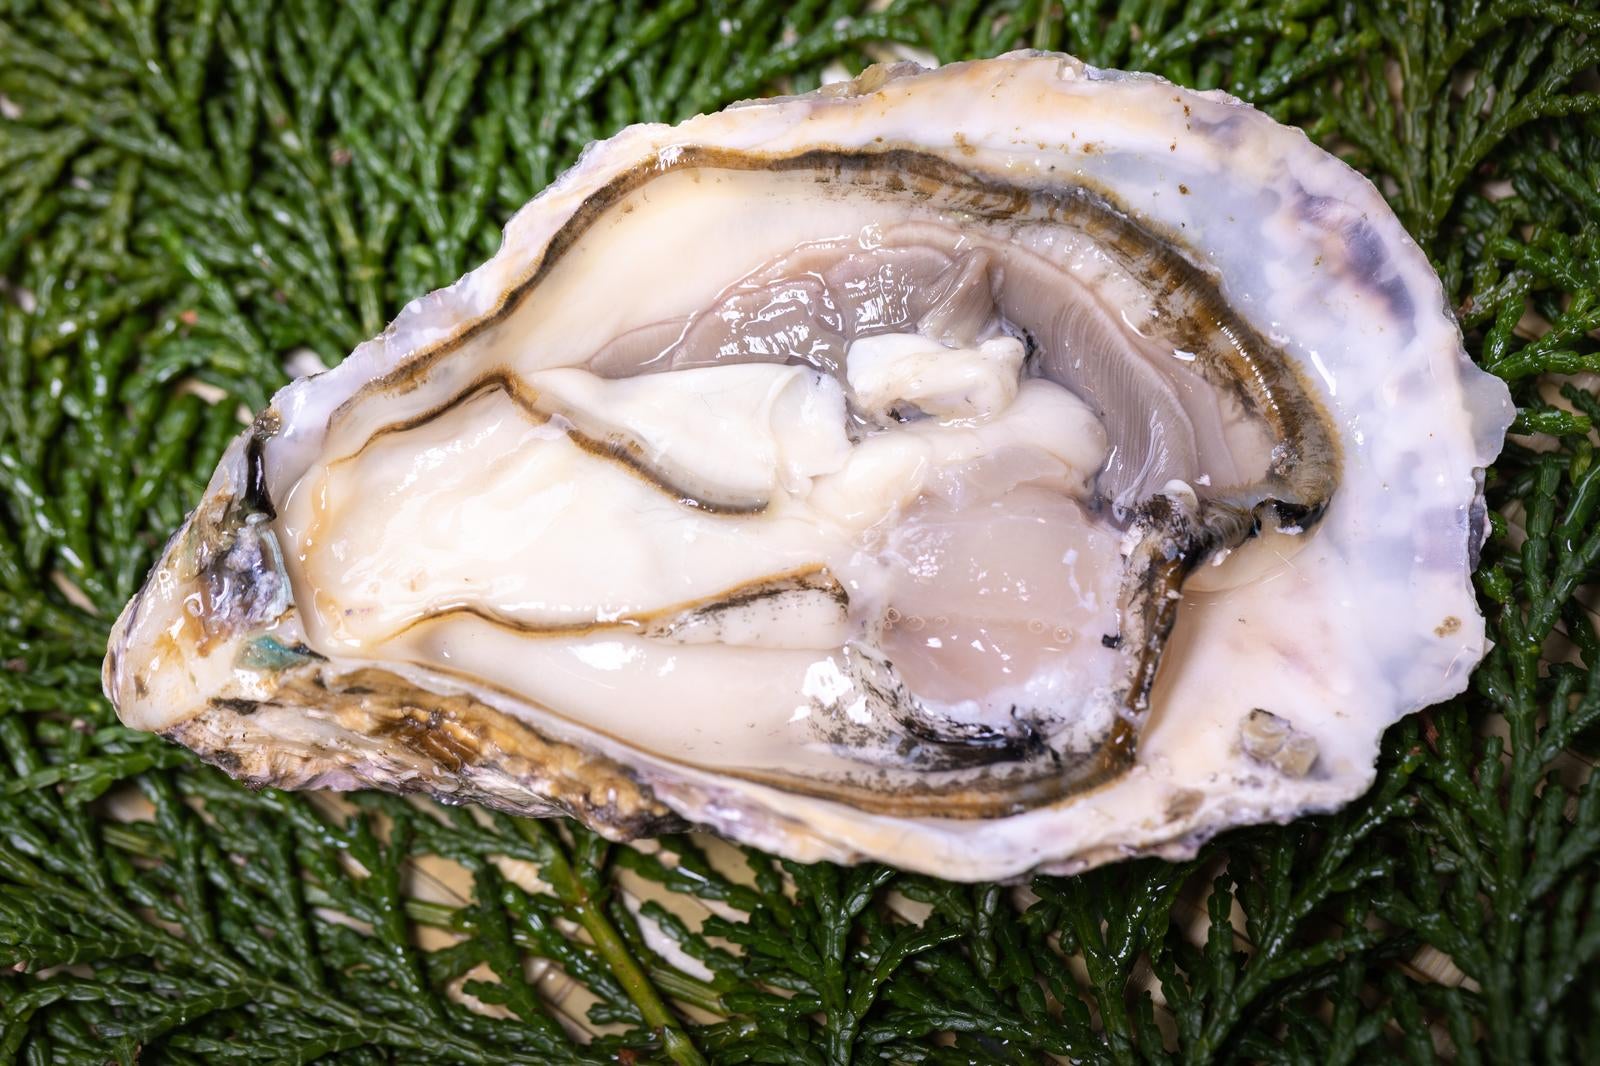 「ヒノキ葉に盛られた新鮮な牡蠣」の写真